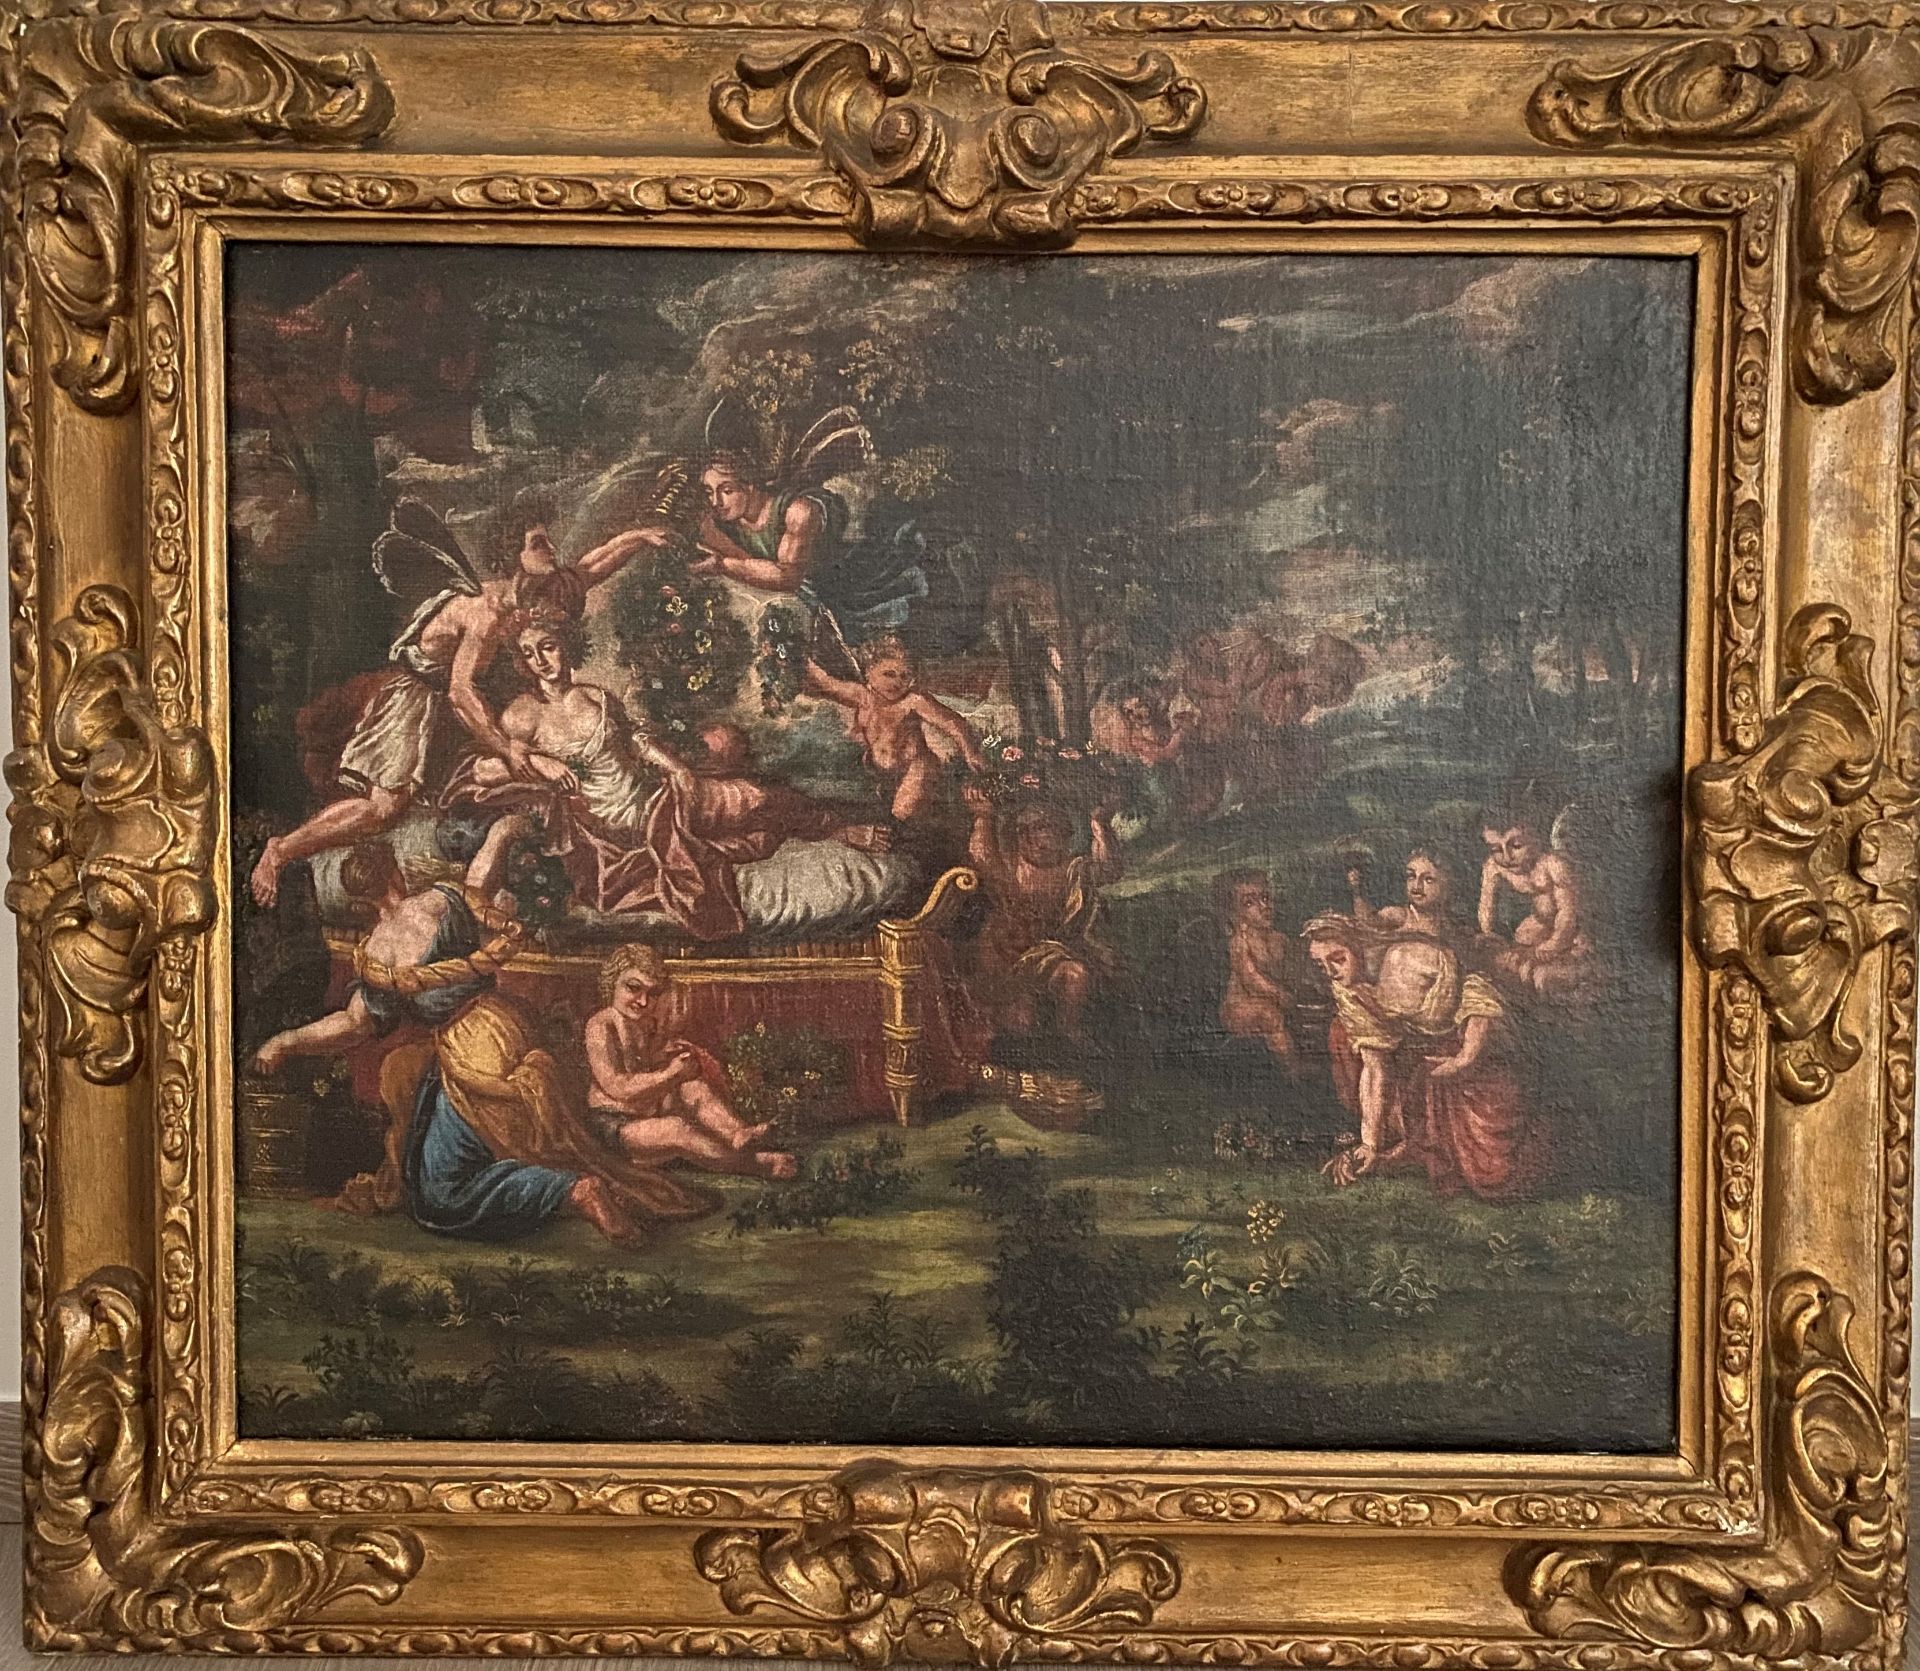 ECOLE DU XVIIIEME SIÈCLE - Scène de bacchanales - Huile sur toile - 50 x 63 cm [...] - Image 2 of 2